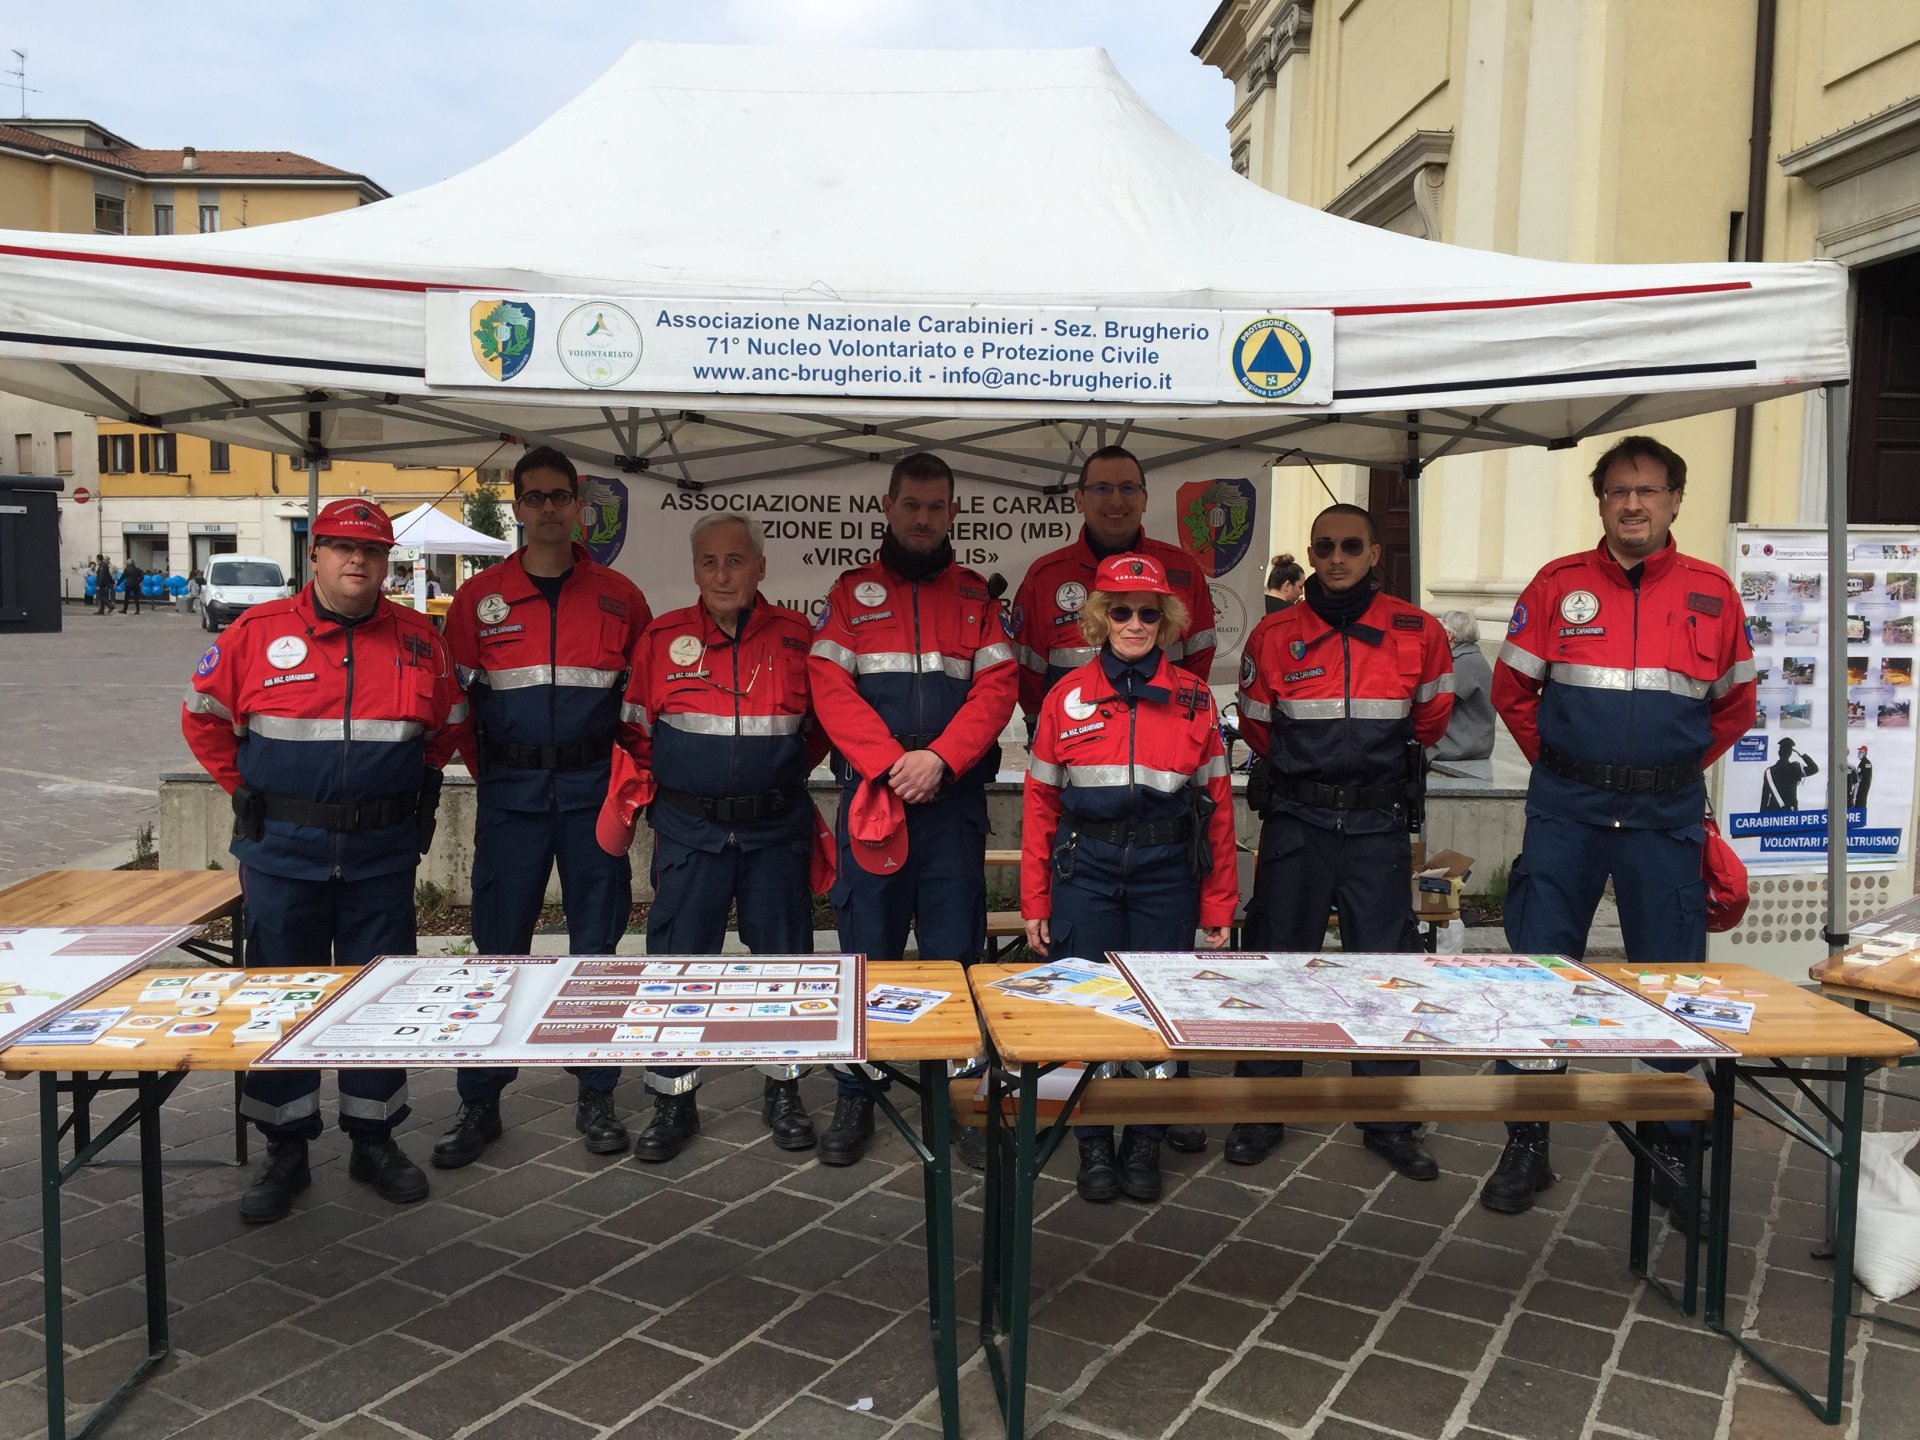 Festa del volontariato Brugherio 2019 in piazza Roma